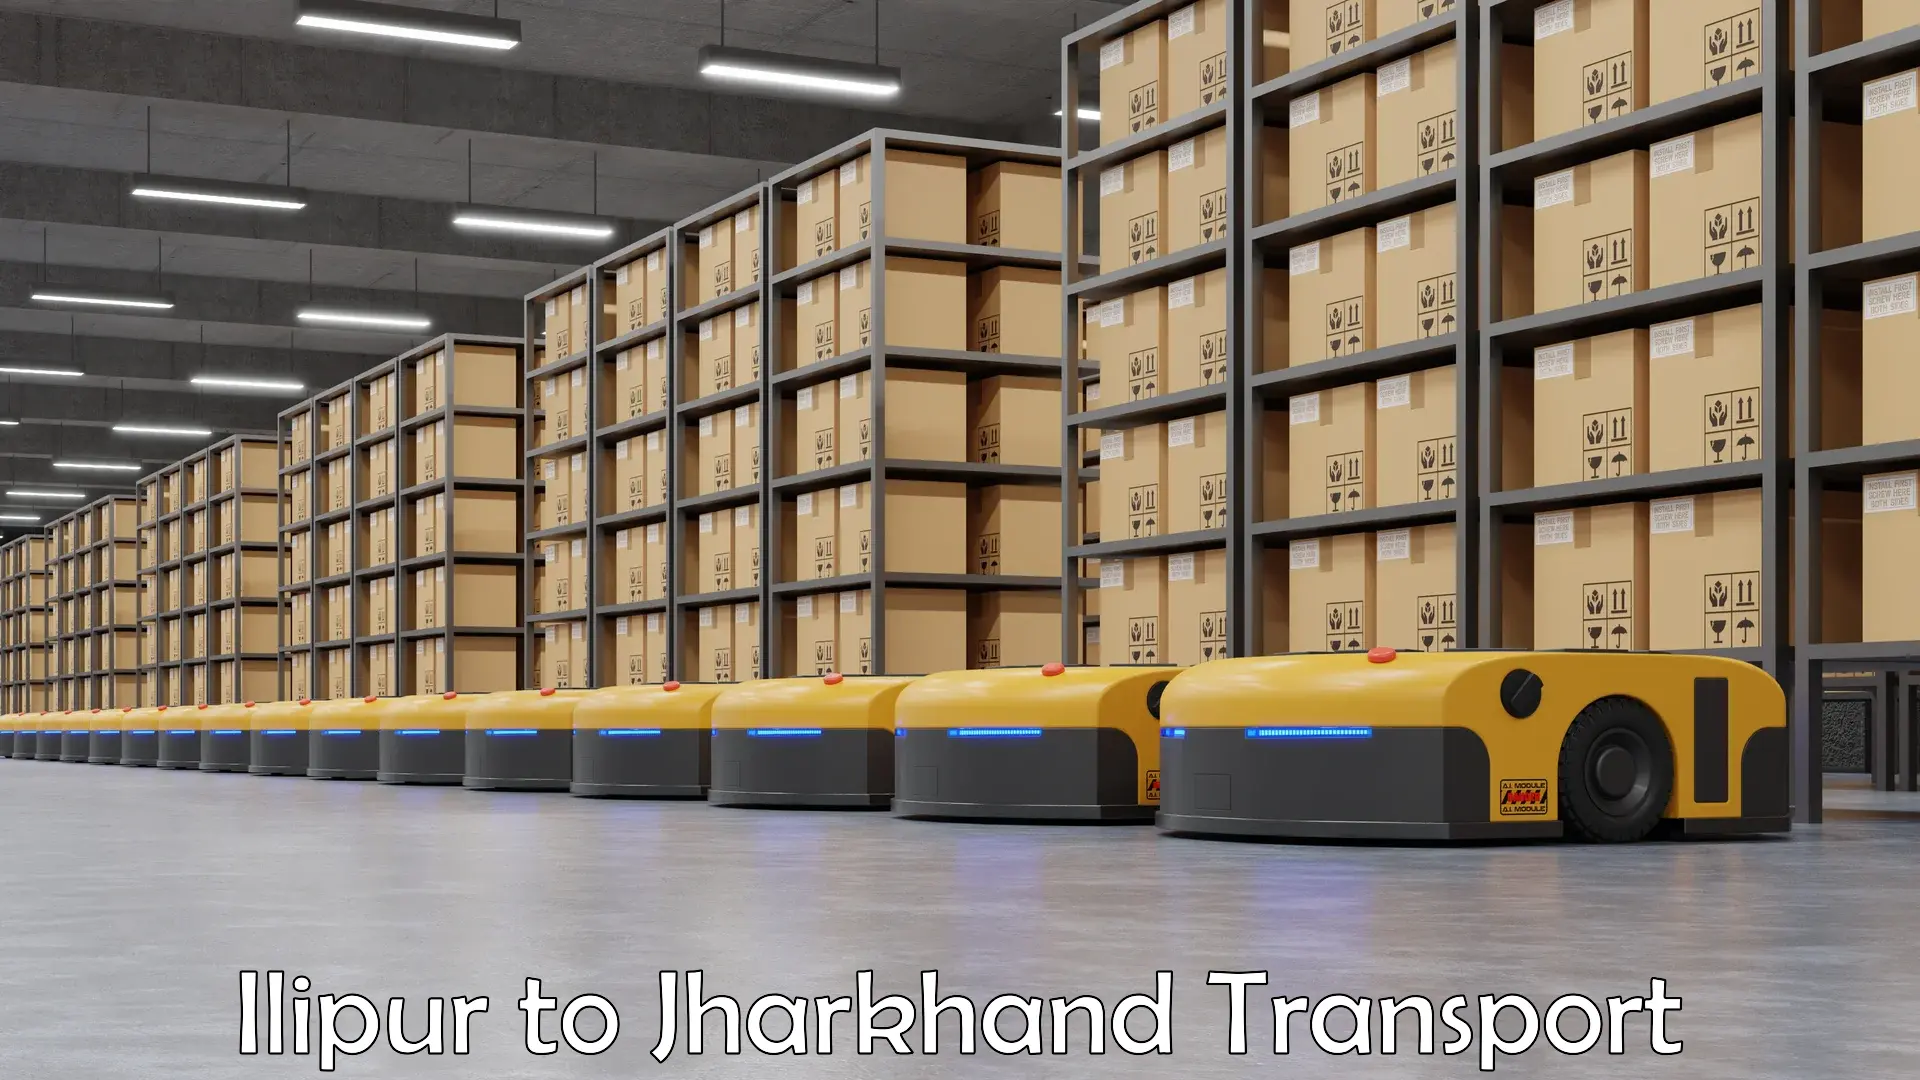 Goods transport services in Ilipur to Medininagar